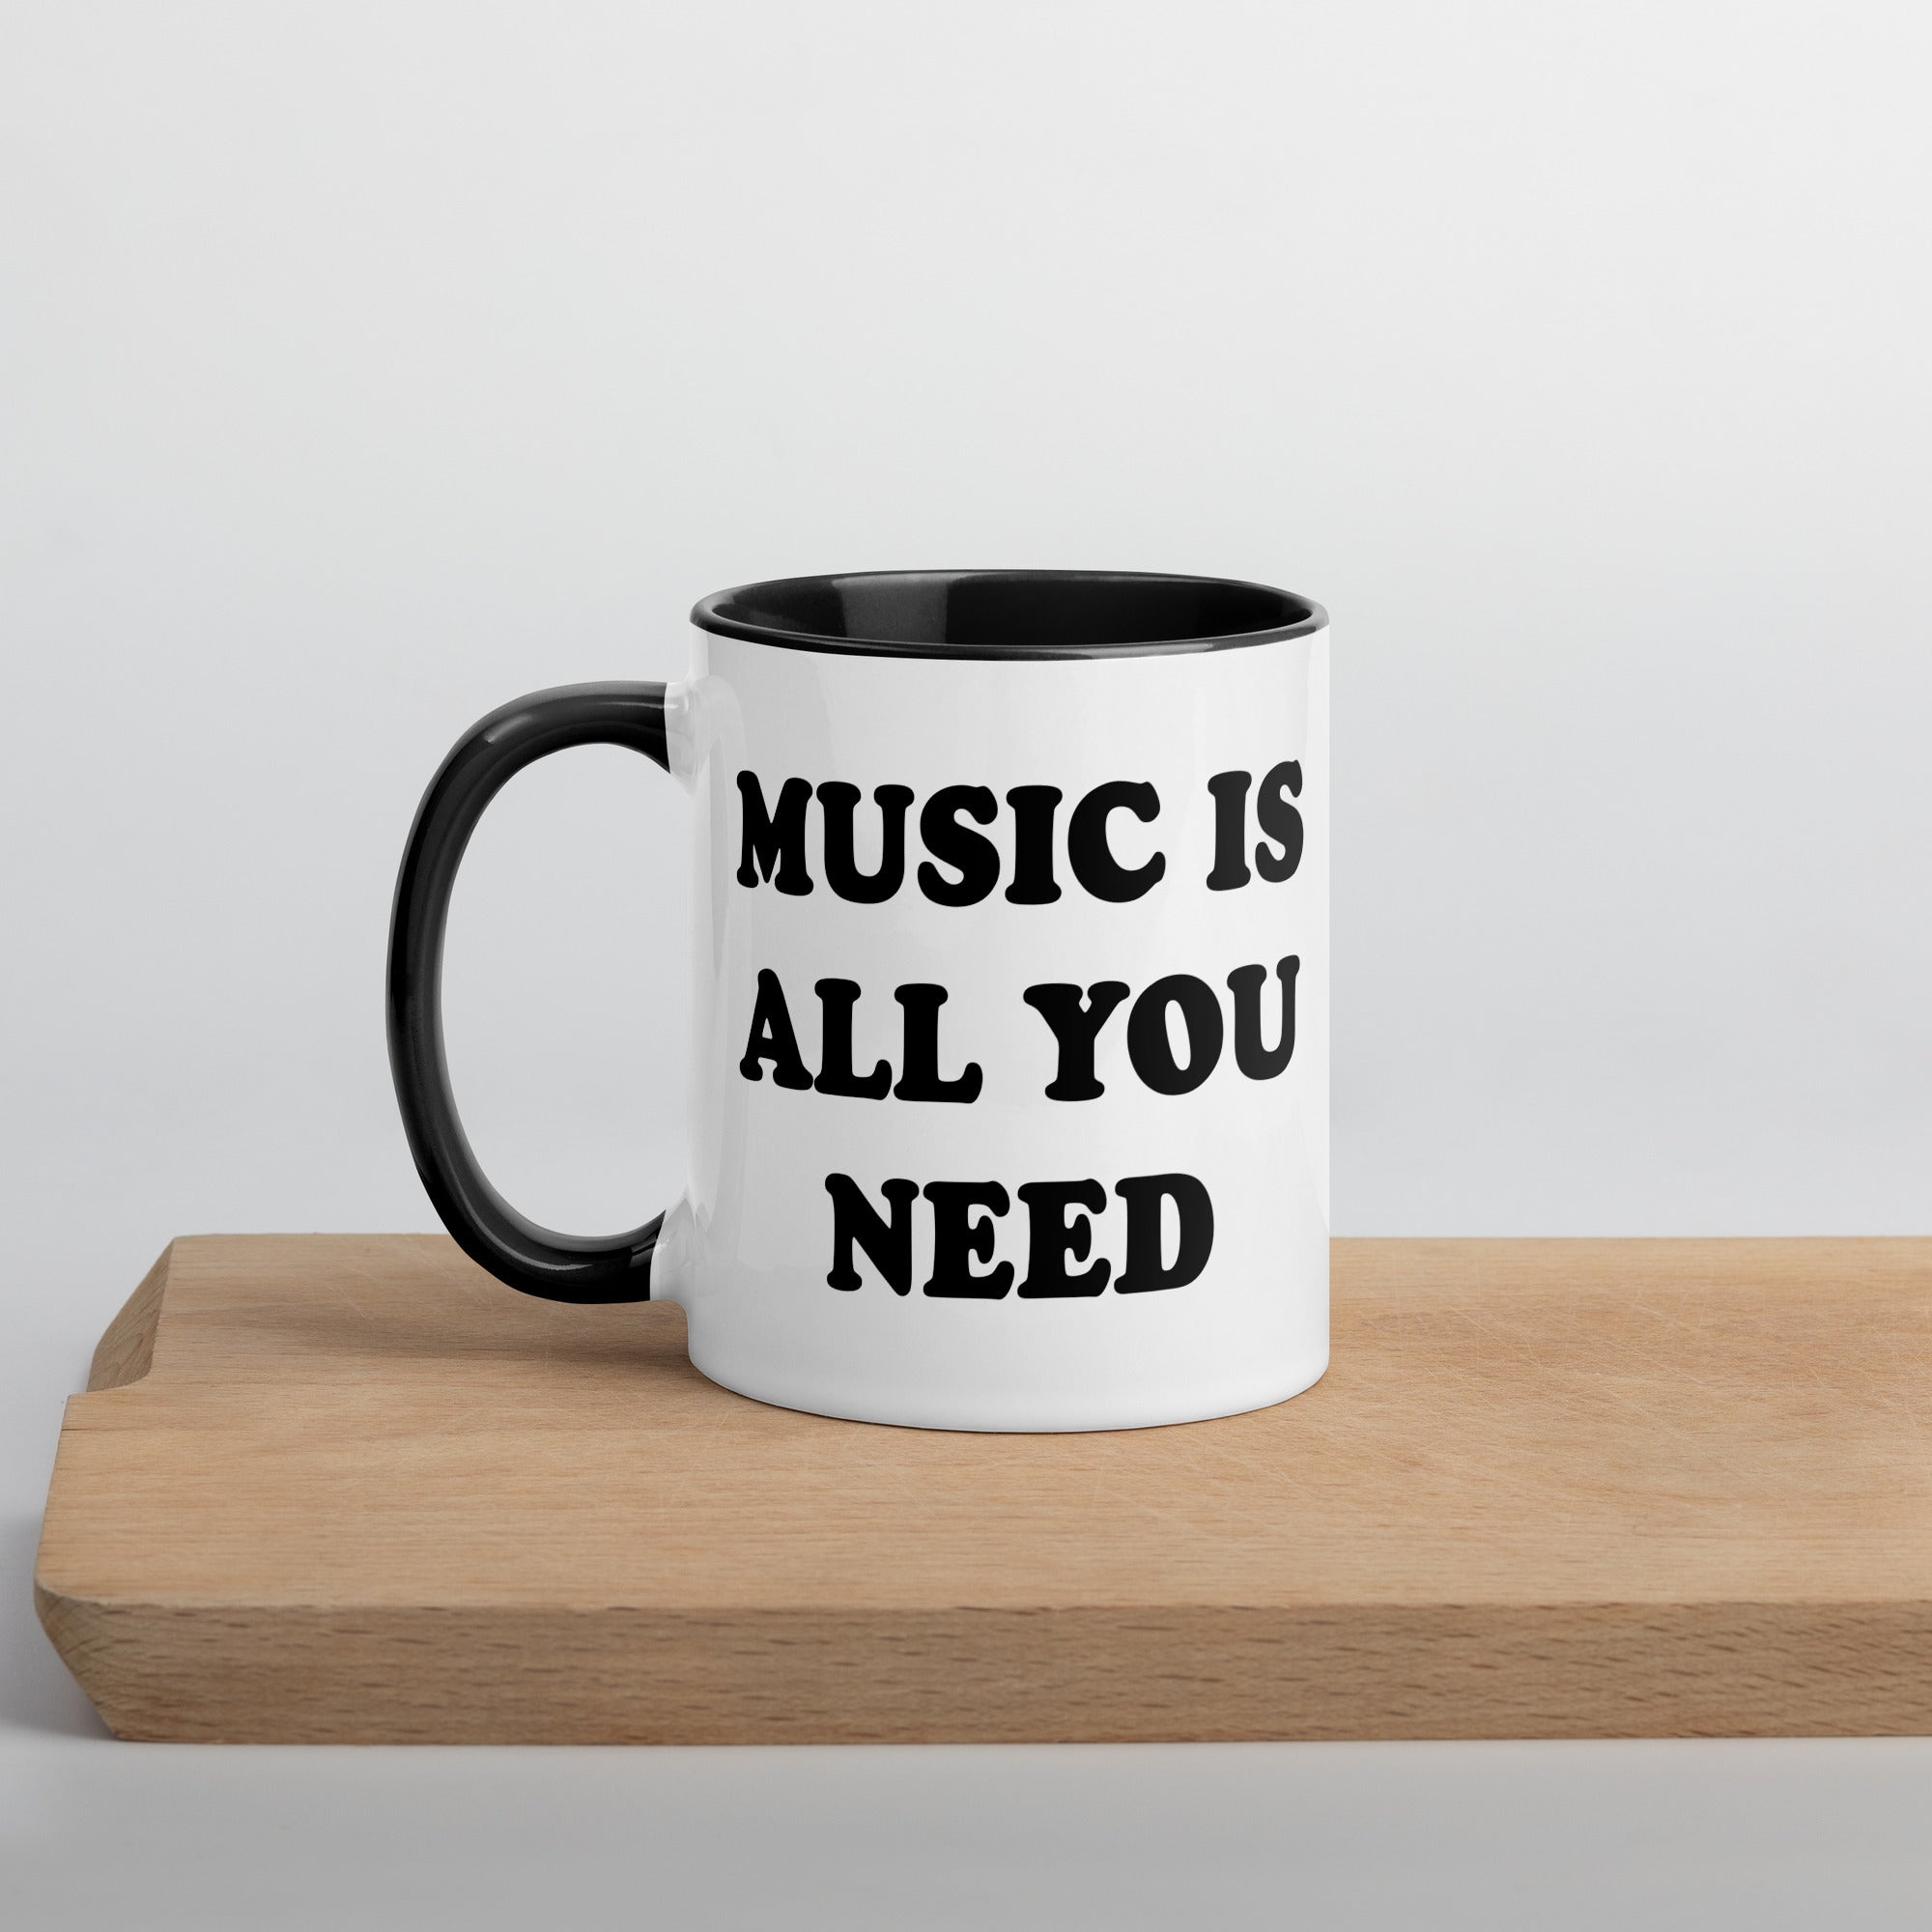 MUSIC IS ALL YOU NEED Printed Mug